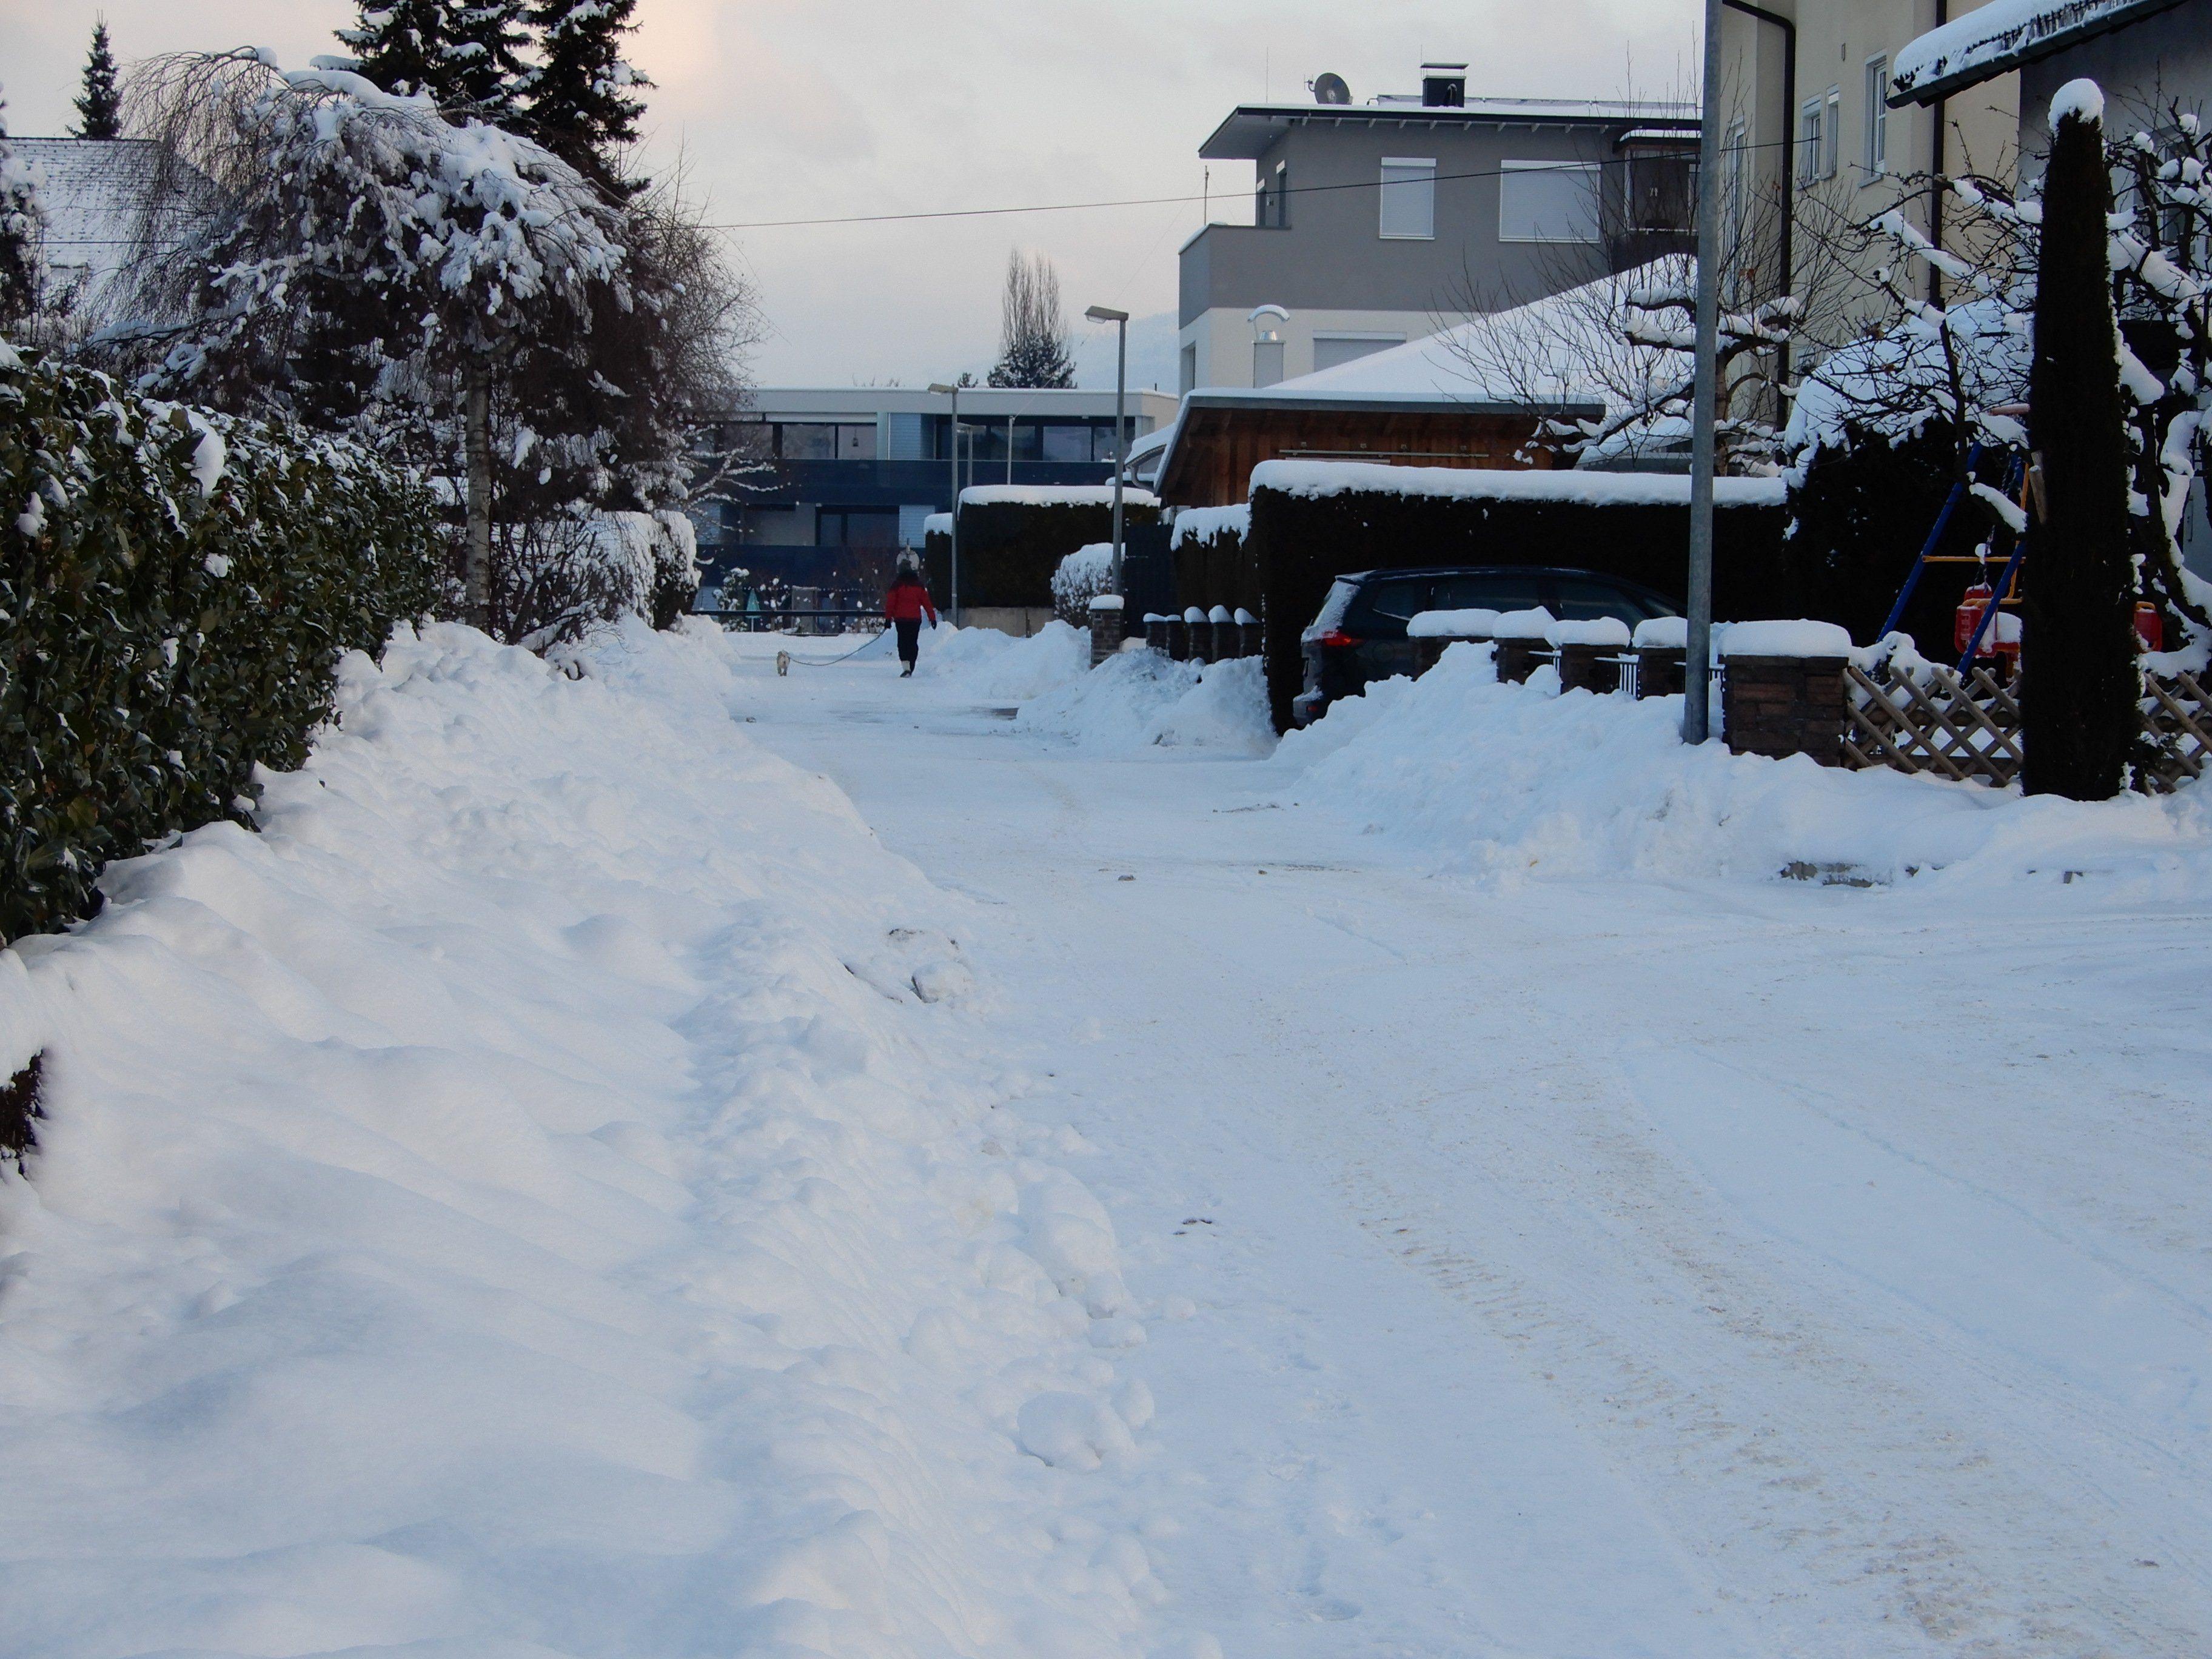 Einige Bürgerforumsteilnehmer würden es begrüßen, wenn die Winterdienstfahrzeuge nicht sofort ausrücken und der Umwelt zuliebe nicht jede kleine Seitenstraße  räumen und salzen, sondern auch einmal eine Schneefahrbahn lassen.